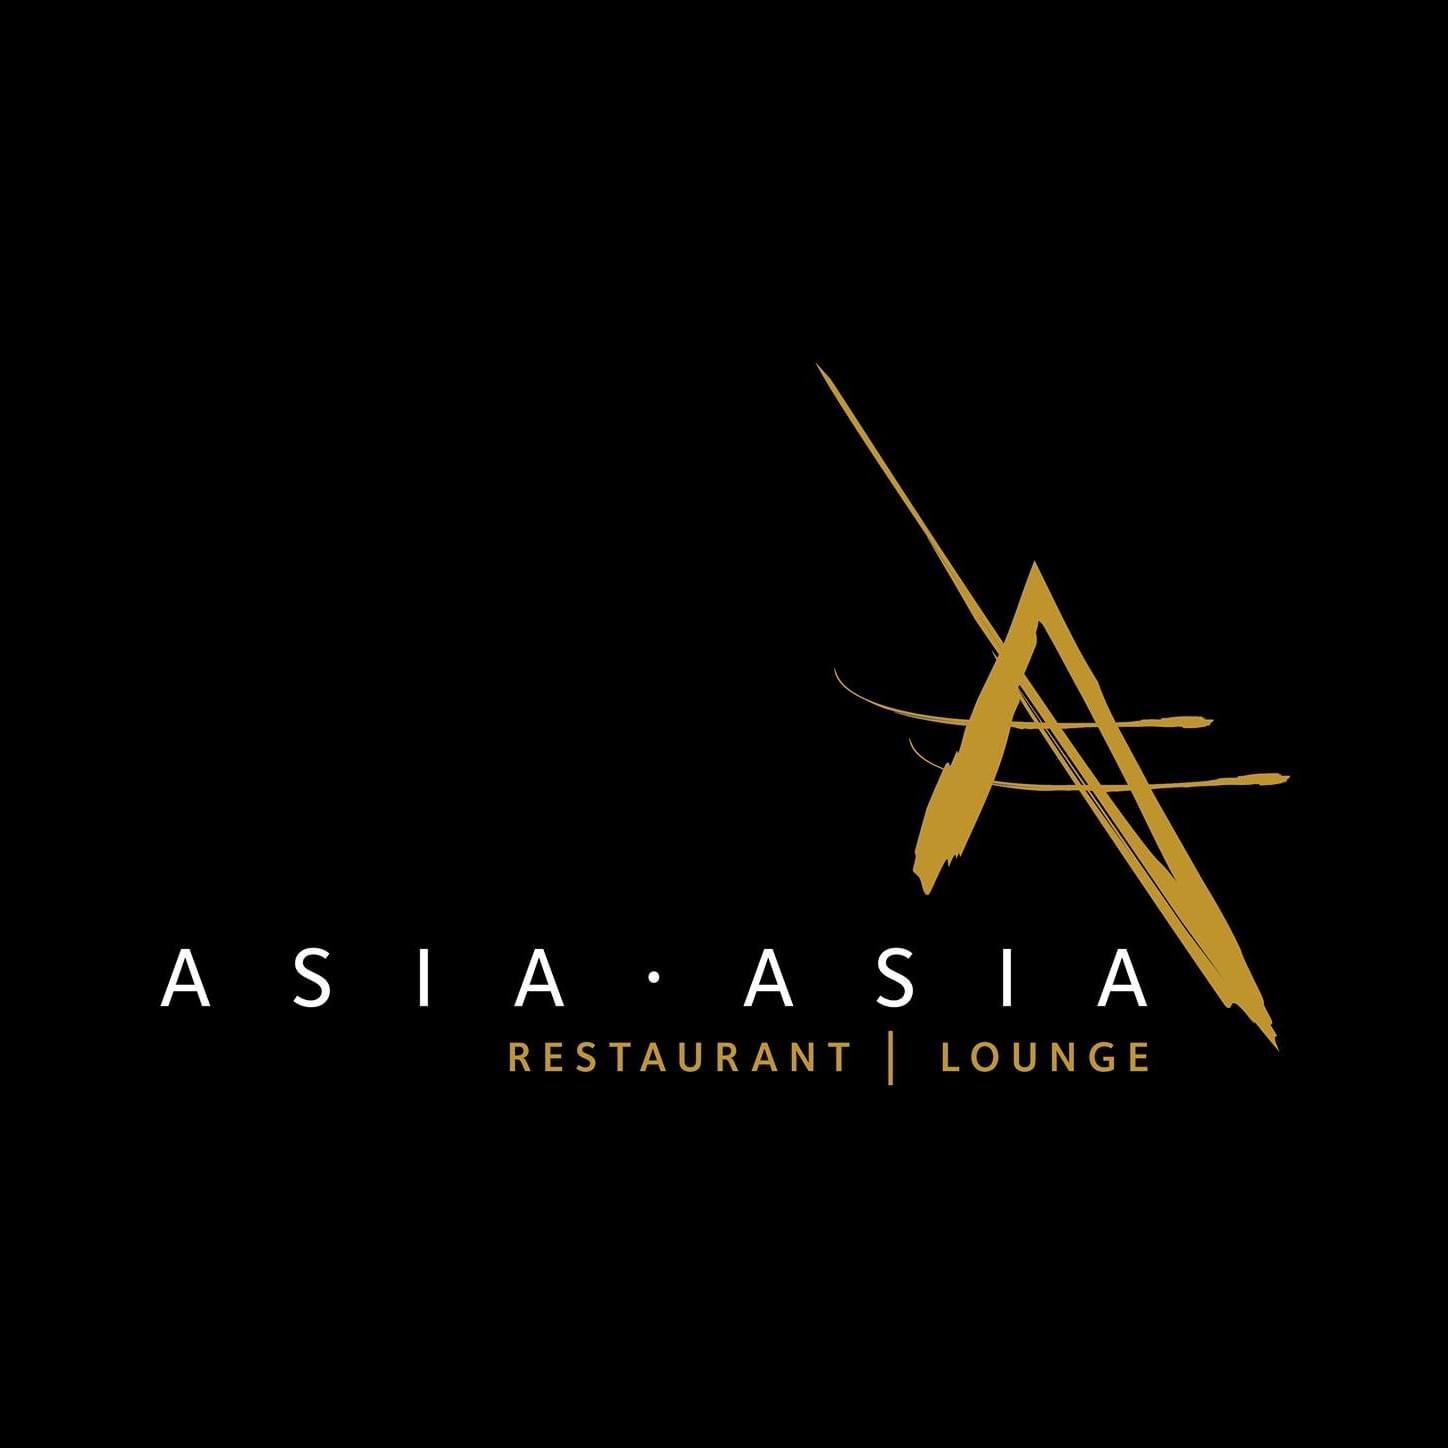 Asia Asia Abu Dhabi